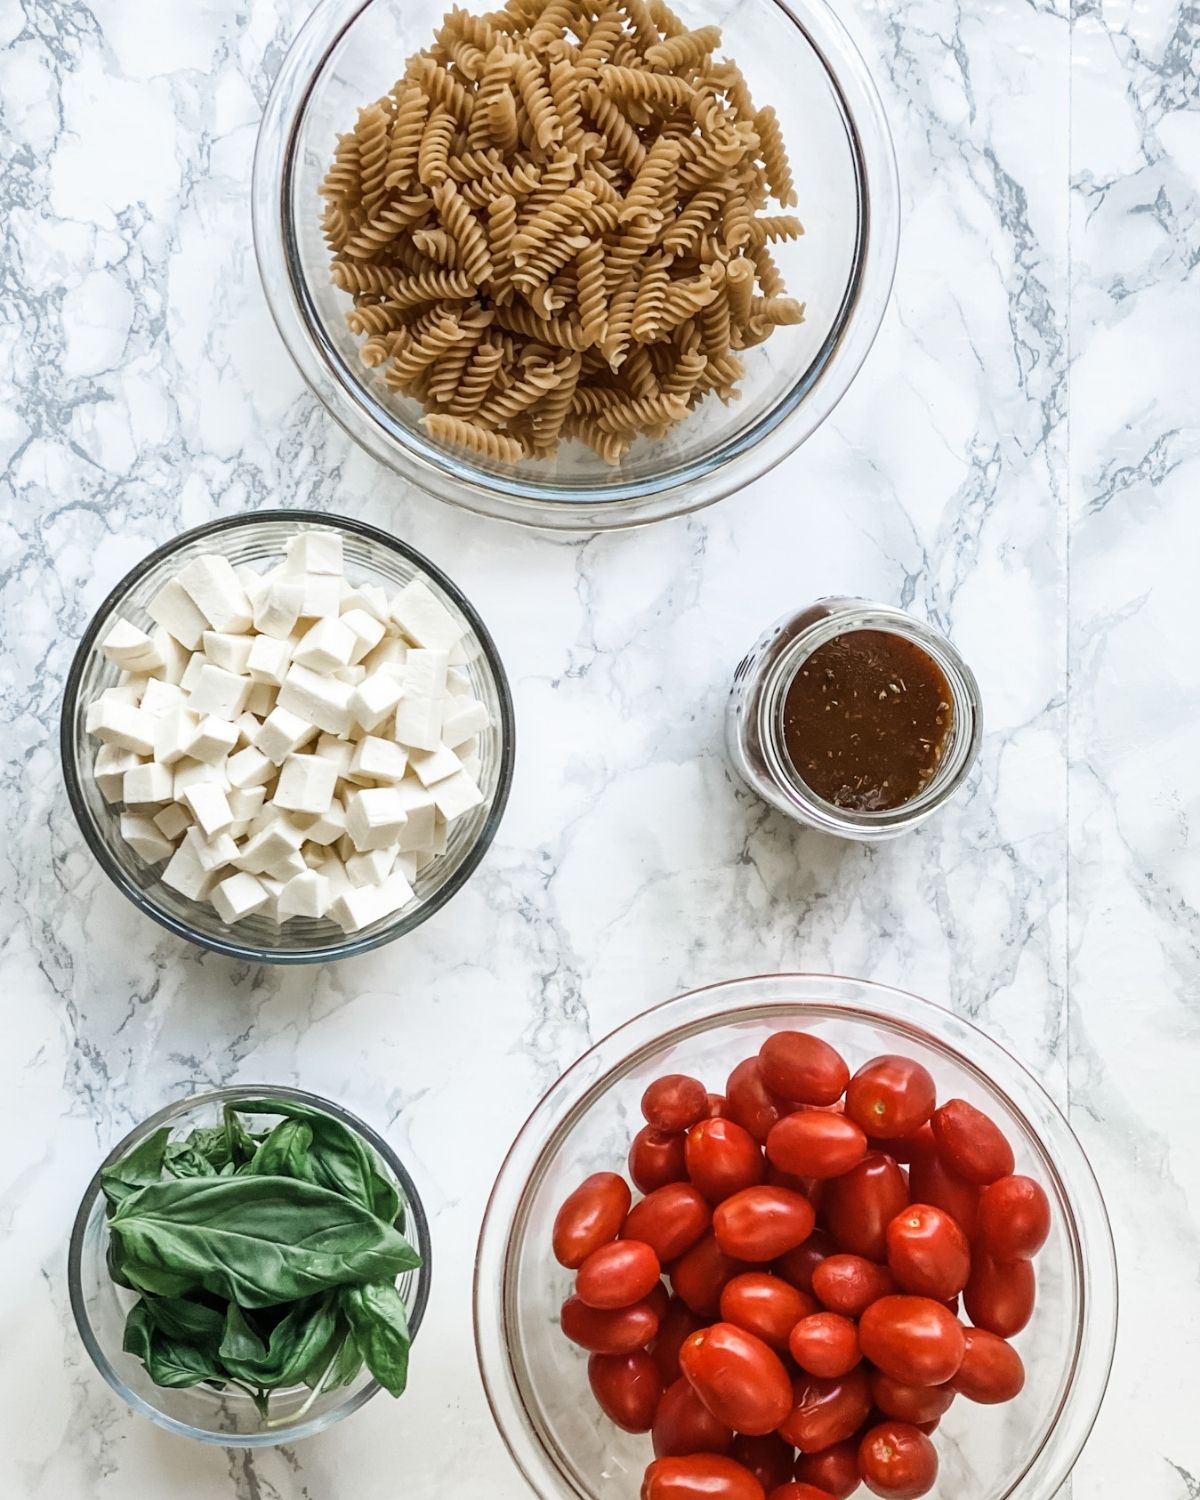 ingredients to make caprese pasta salad.